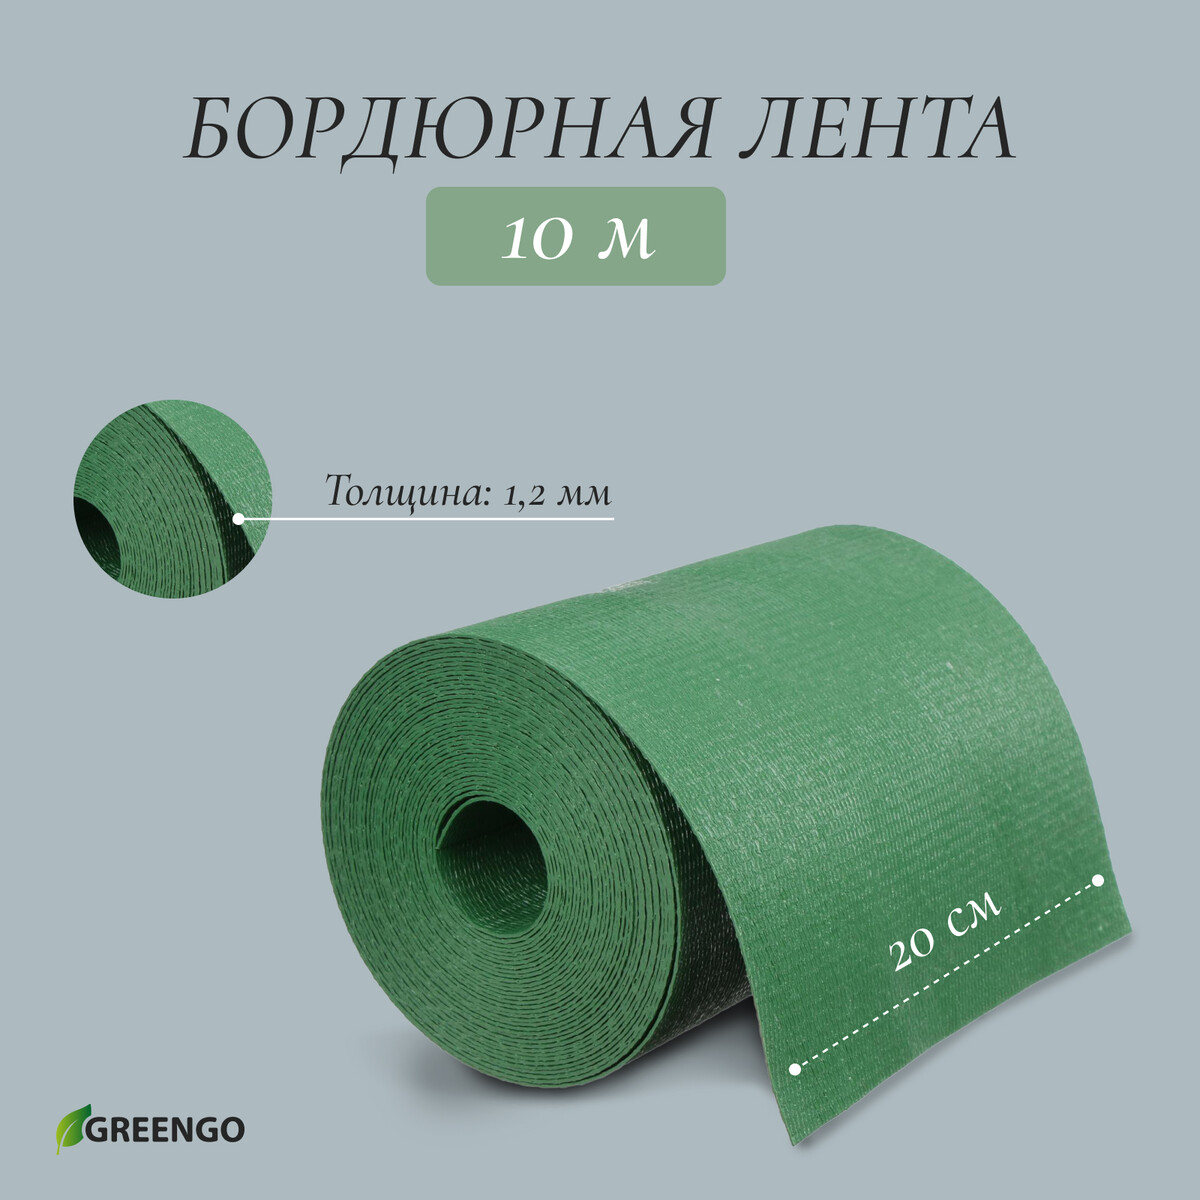 Лента бордюрная, 0.2 × 10 м, толщина 1.2 мм, пластиковая, зеленая, greengo лента бордюрная 0 15 × 9 м толщина 1 2 мм пластиковая фигурная зеленая